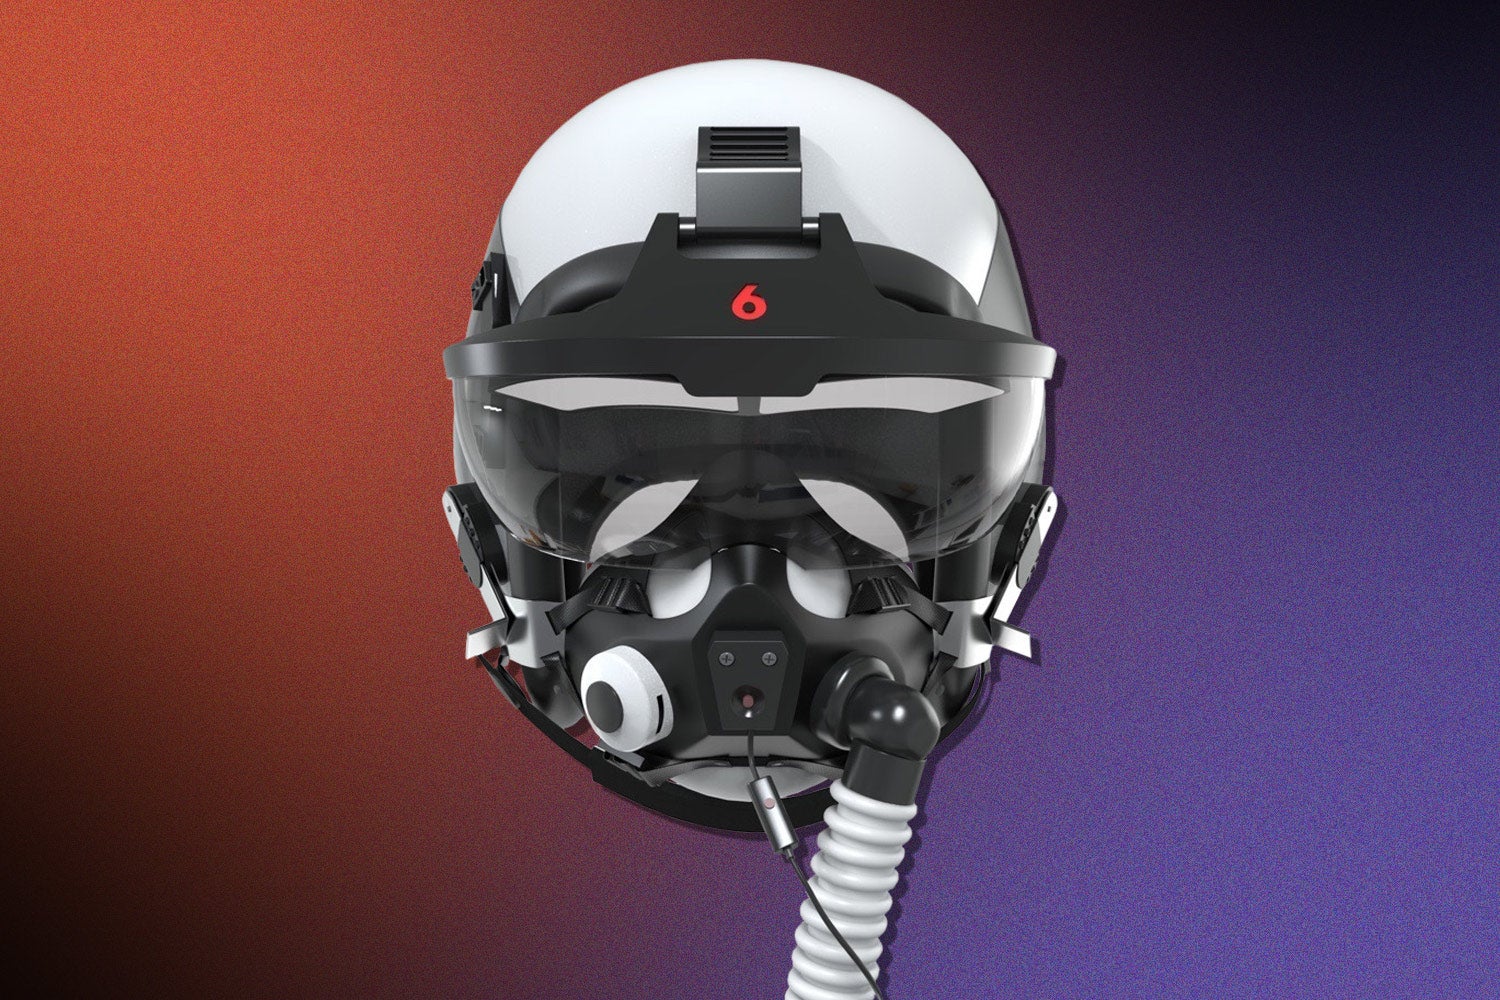 Tấm che mặt thực tế ảo của phi công có thể mô phỏng sự hiện diện của các máy bay khác, chồng lên một đối thủ tổng hợp trong thế giới thực. Ảnh: @Red 6.